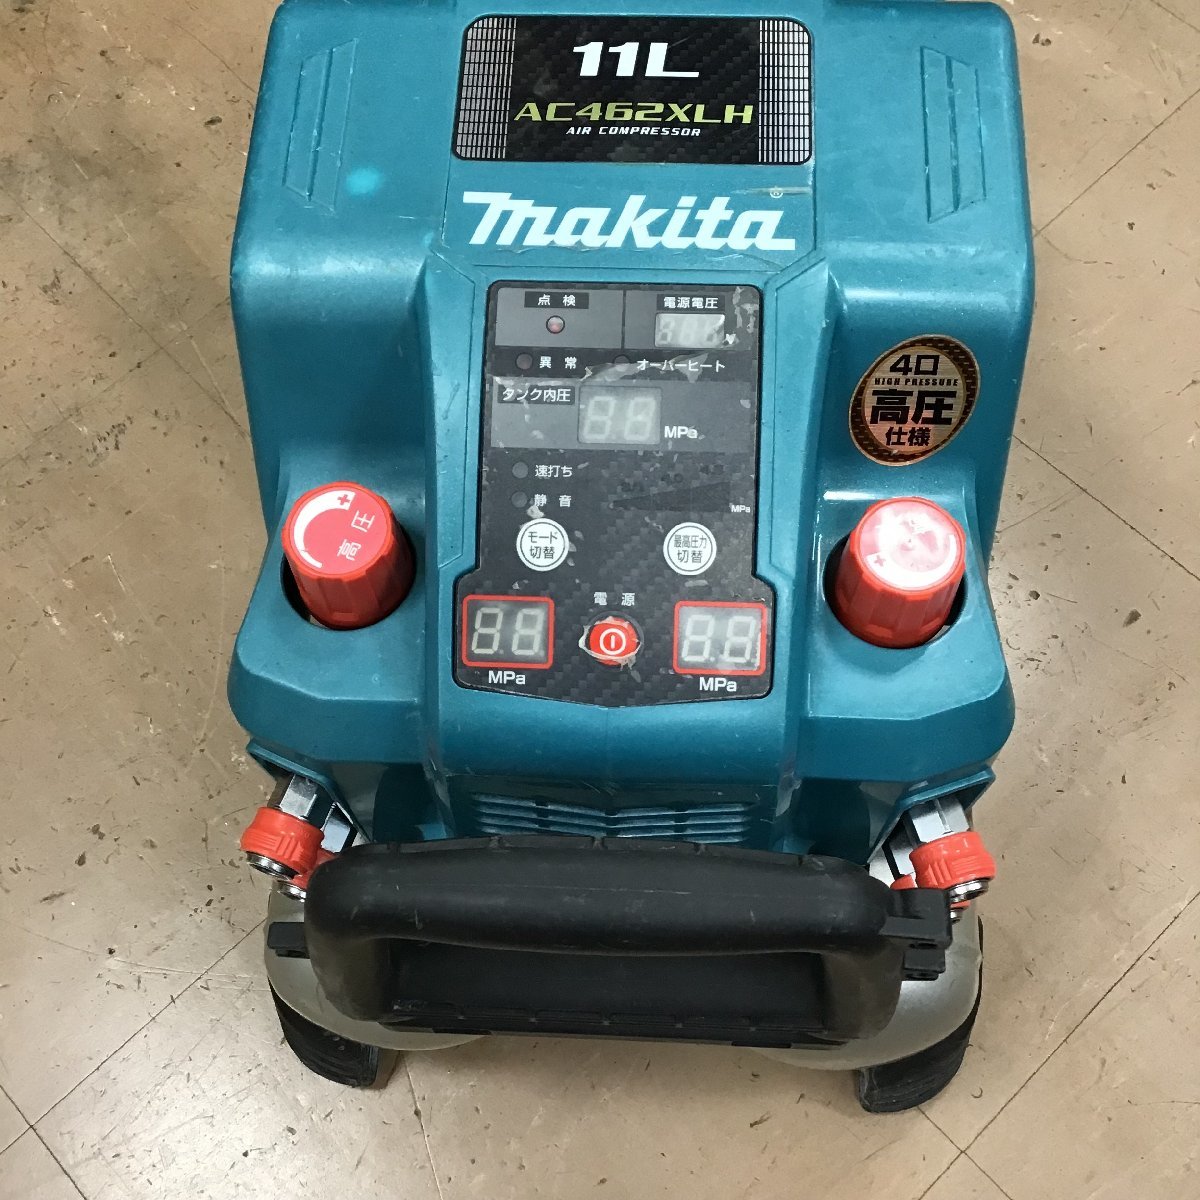 中古品 マキタ makita 46気圧 高圧 エア コンプレッサー AC462XLH タンク容量11L - 工具、DIY用品